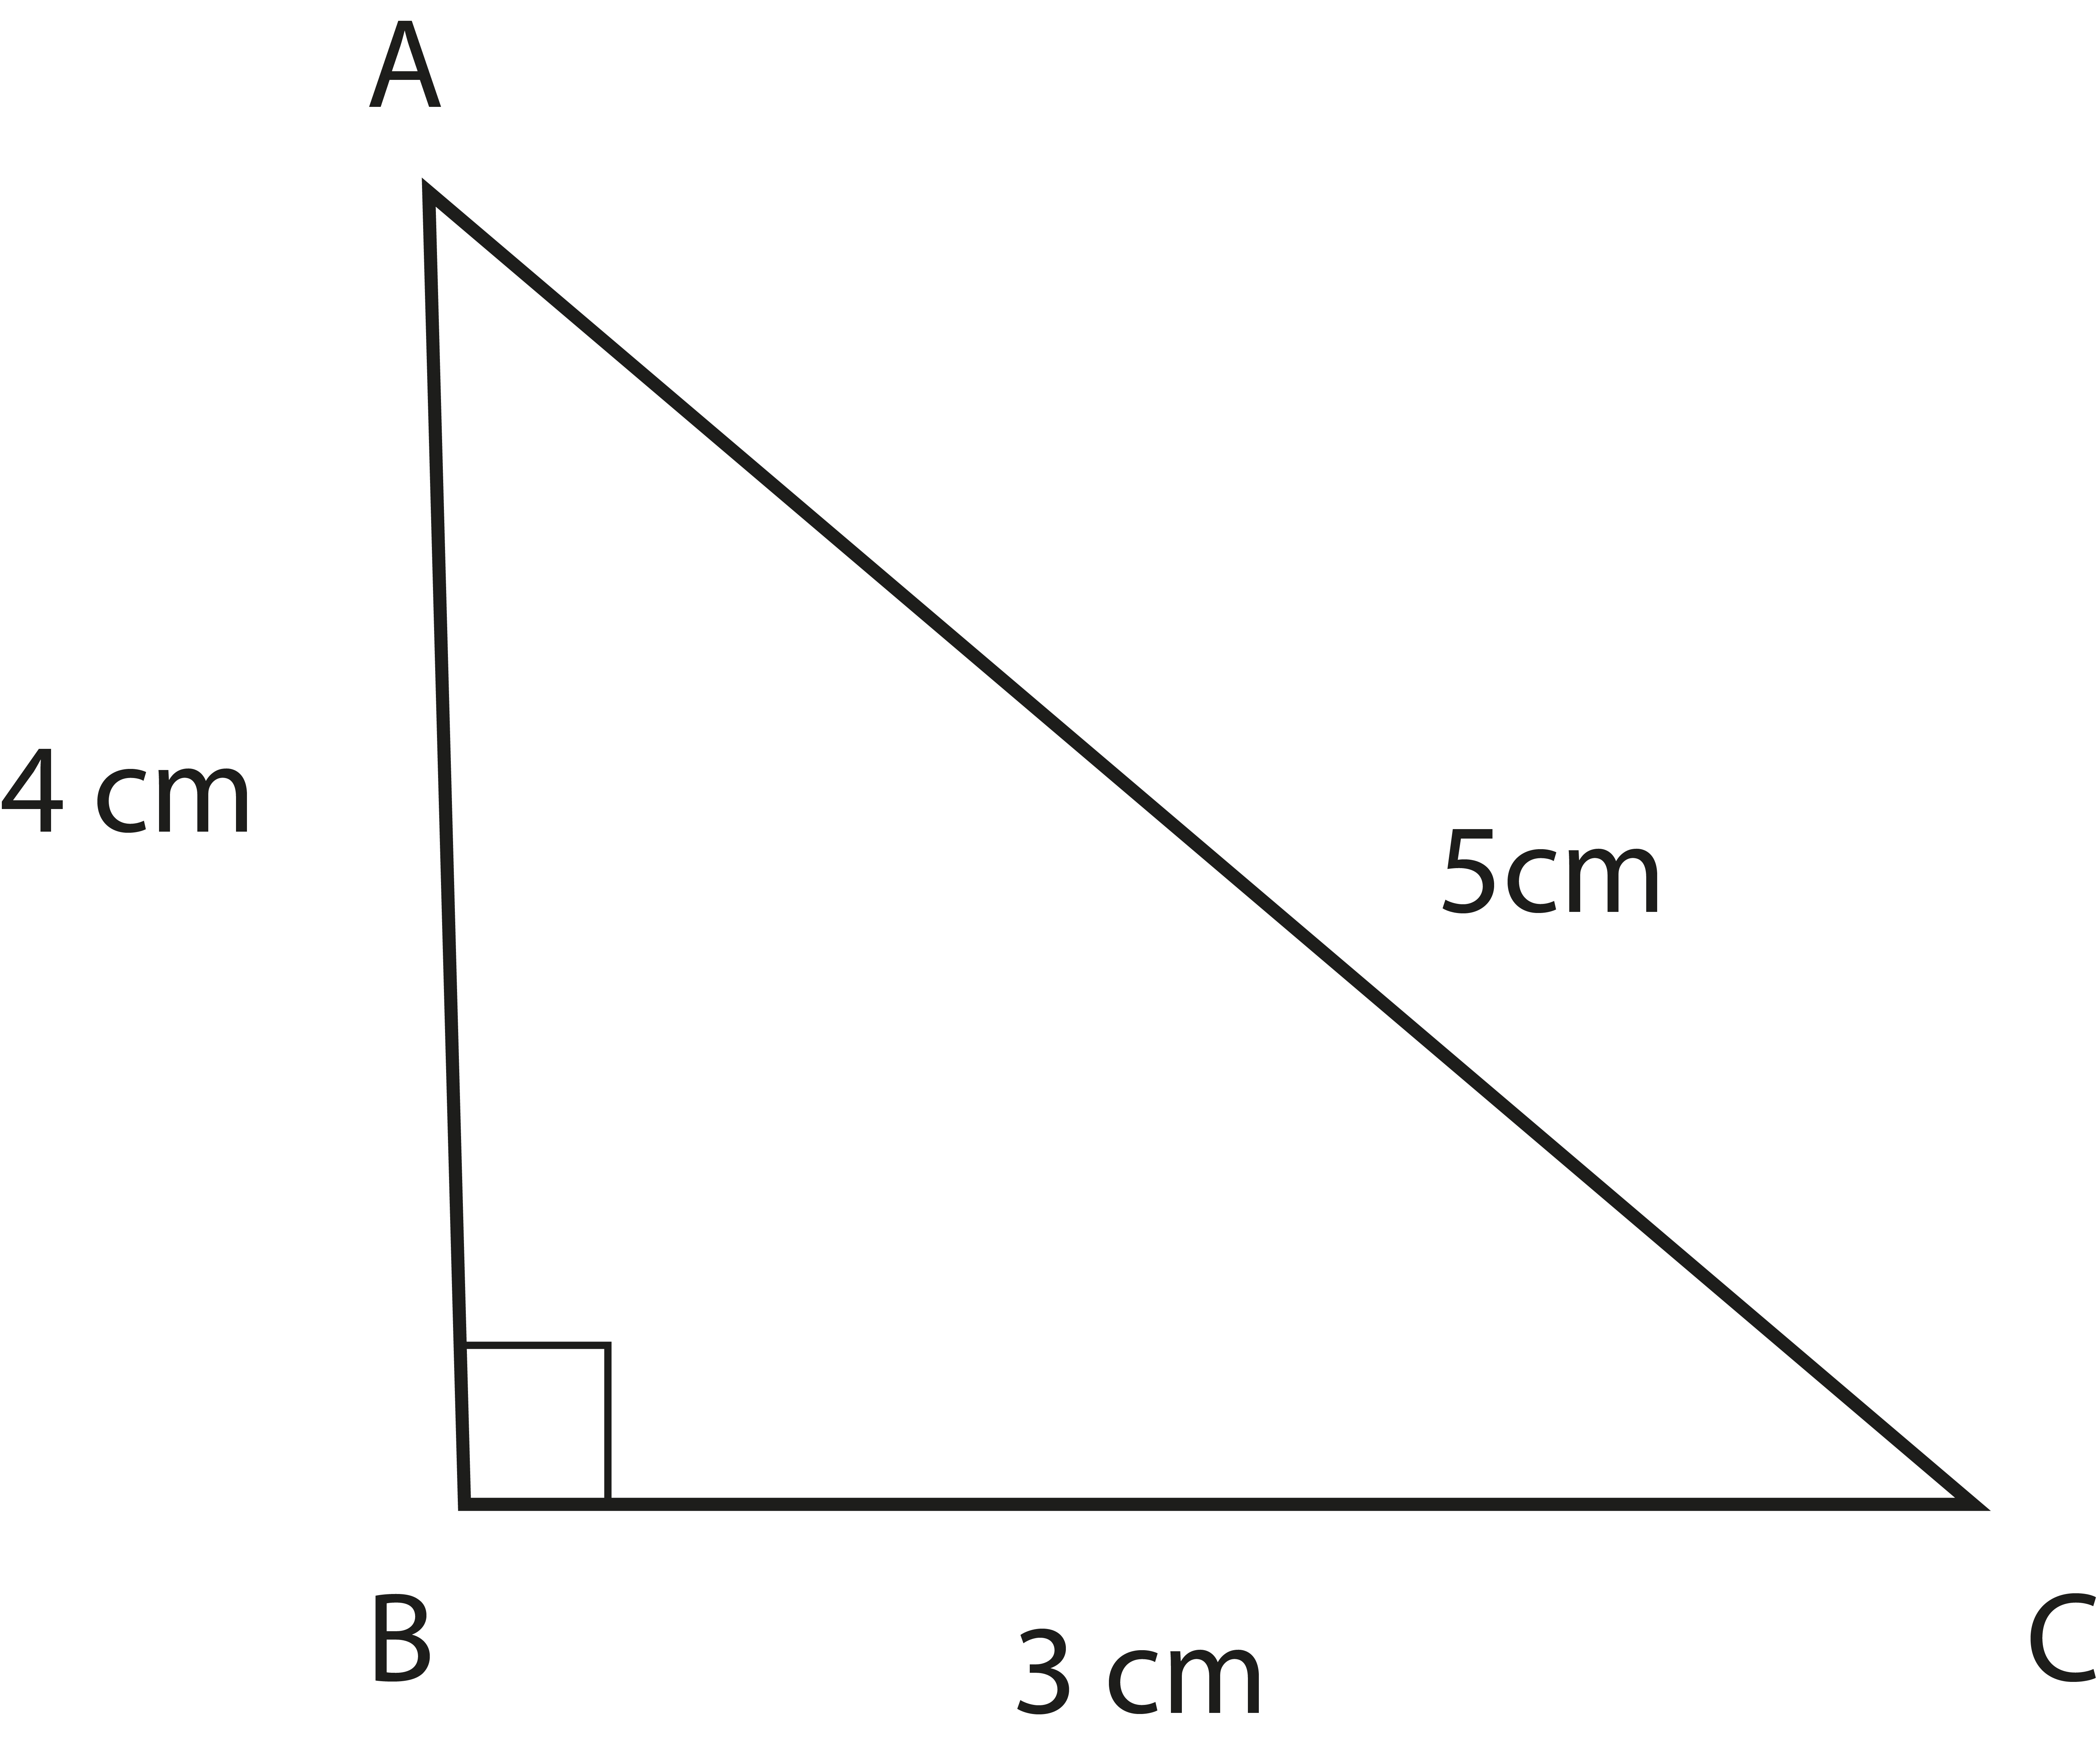 Area of Triangle in ABC triangle